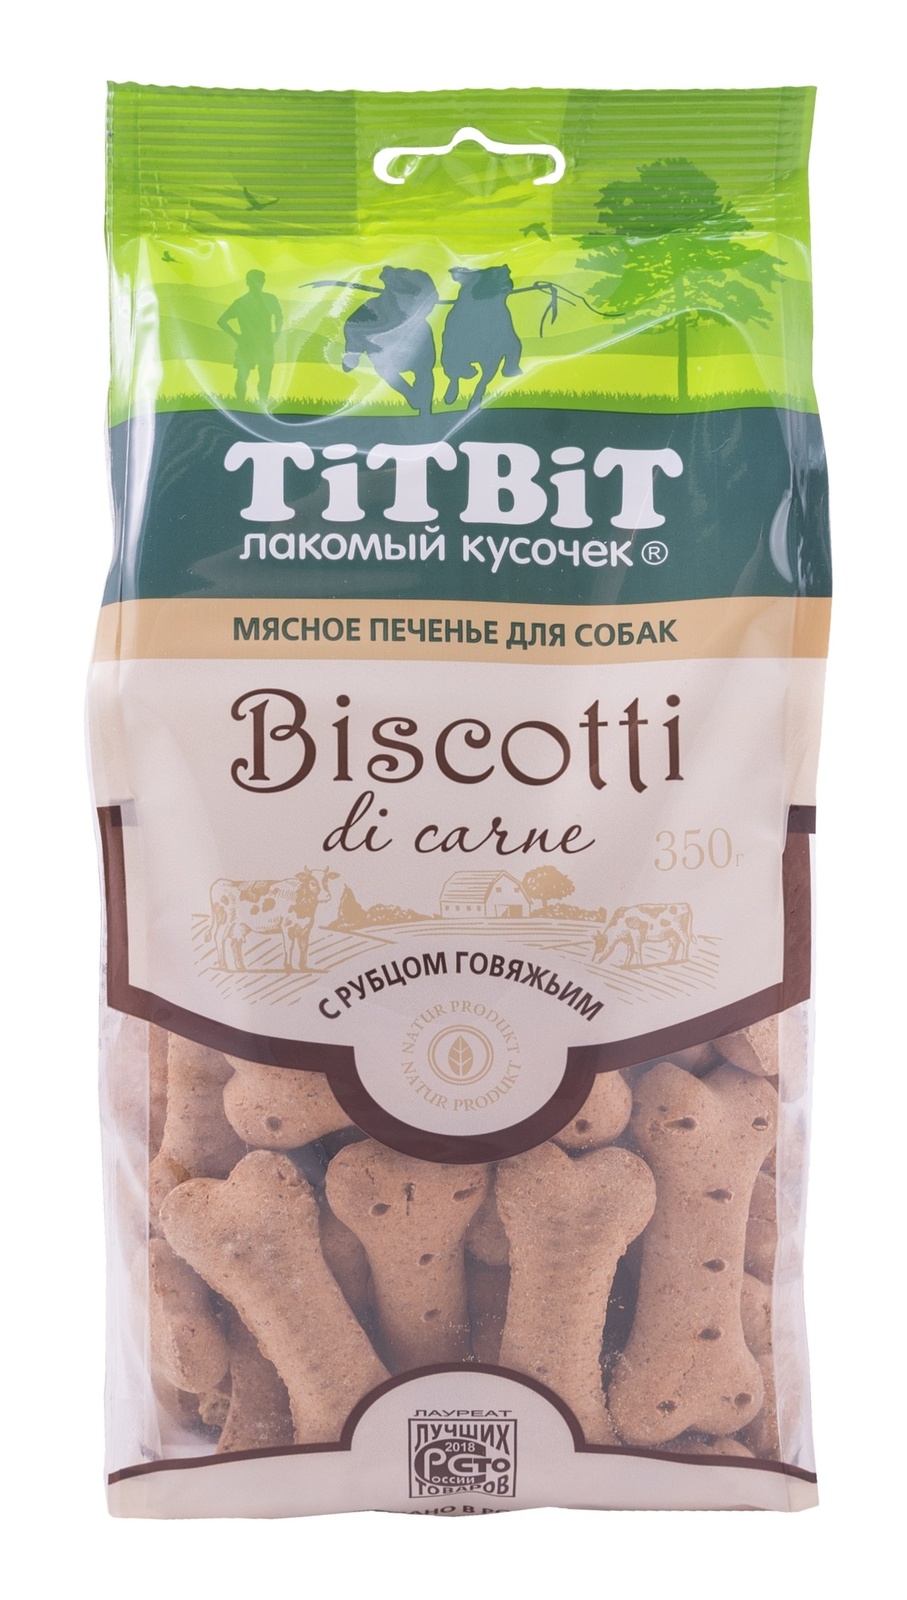 TiTBiT TiTBiT печенье Бискотти с рубцом говяжьим (350 г)